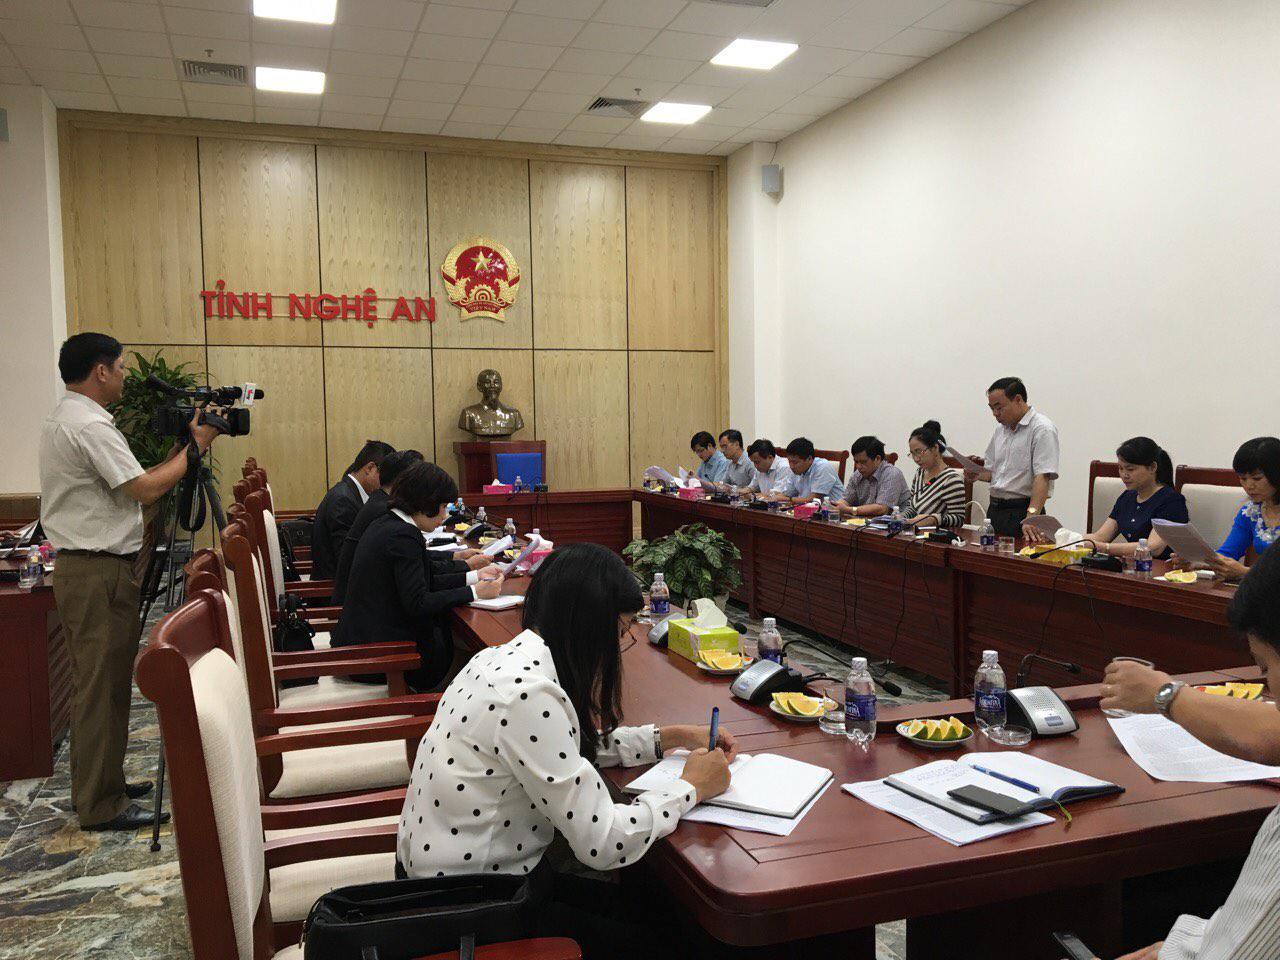 Vietravel làm việc cùng UBND tỉnh Nghệ An xây dựng và phát triển sản phẩm Du lịch tại Nghệ An